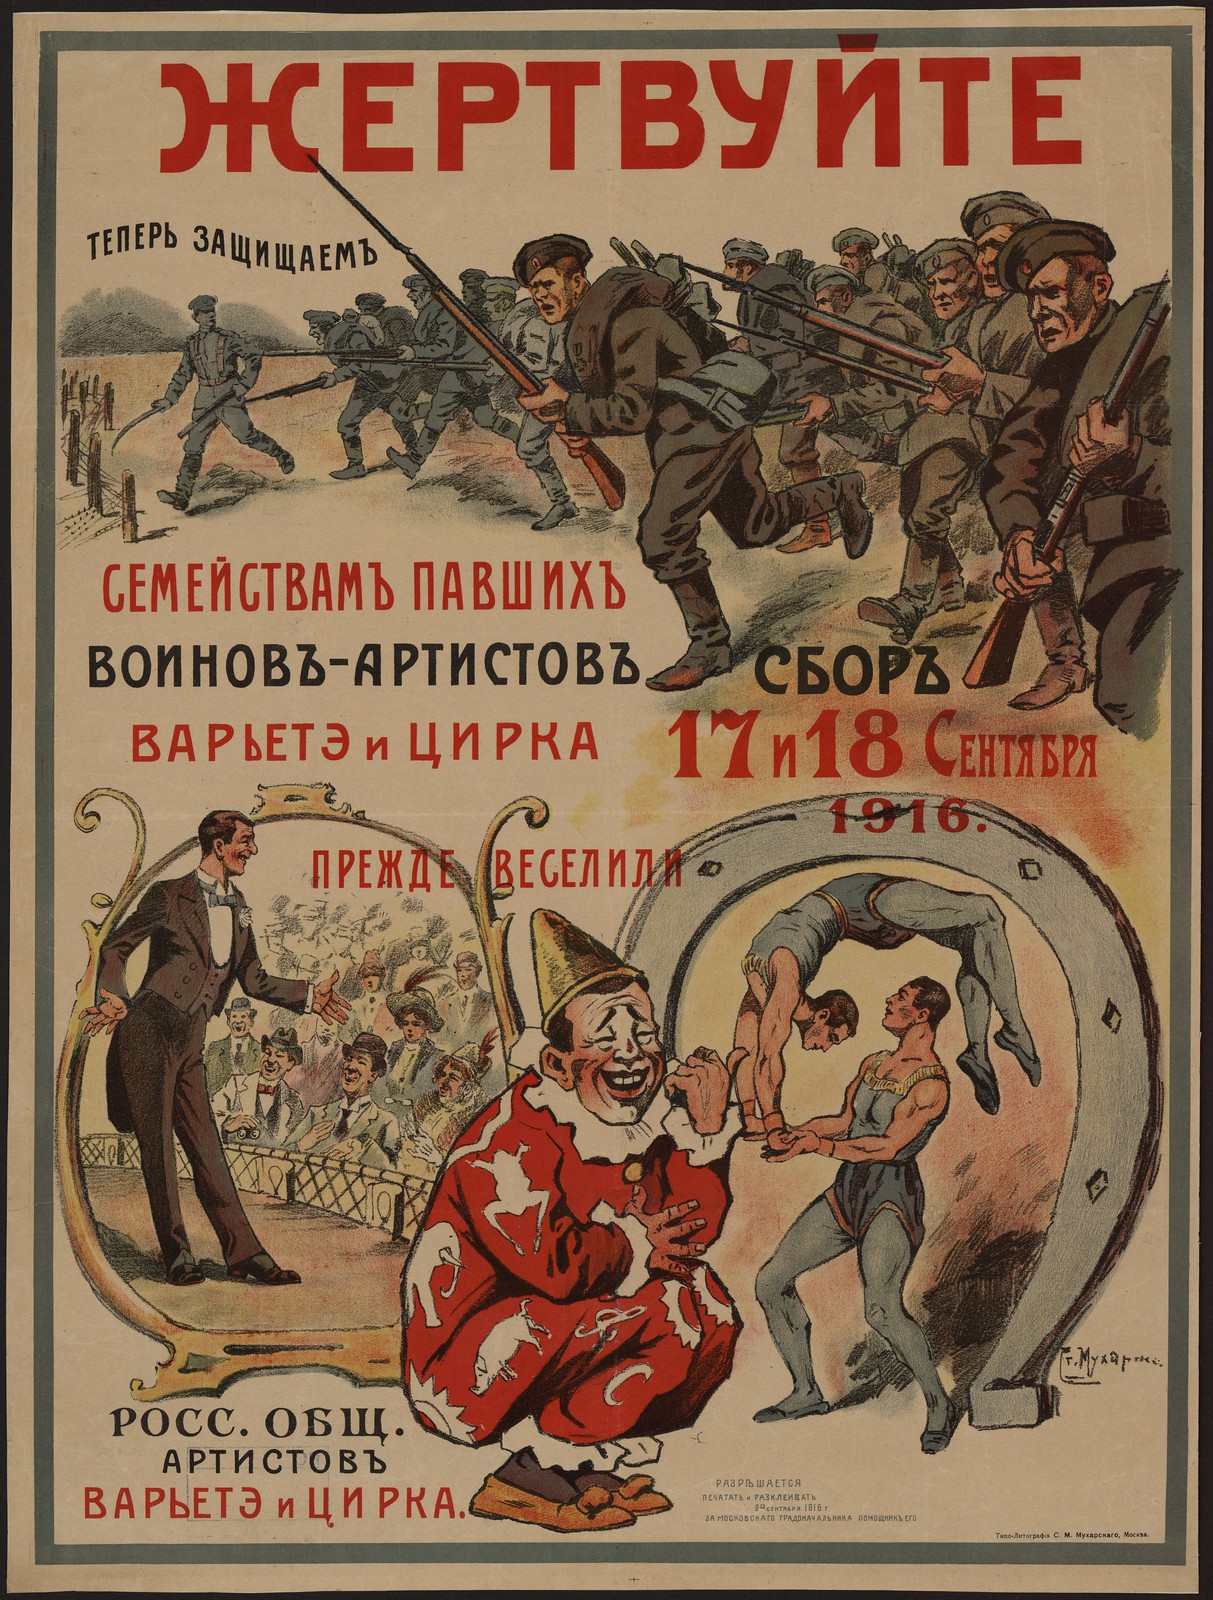 Жертвуйте семействам павших воинов-артистов варьете и цирка. Сбор 17 и 18 сентября 1916